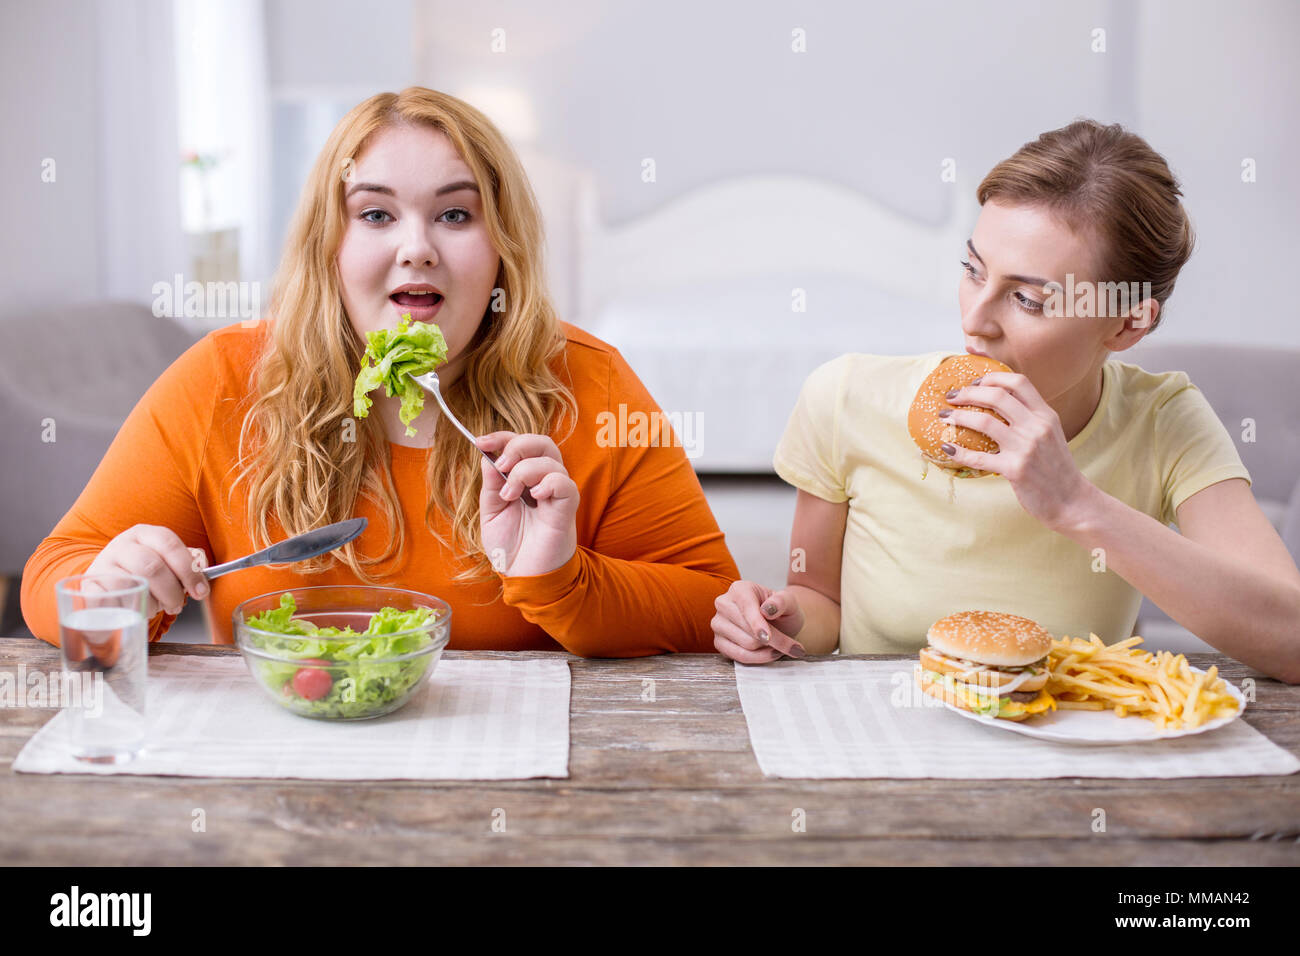 Plump contenu femme en train de déjeuner avec son ami Banque D'Images